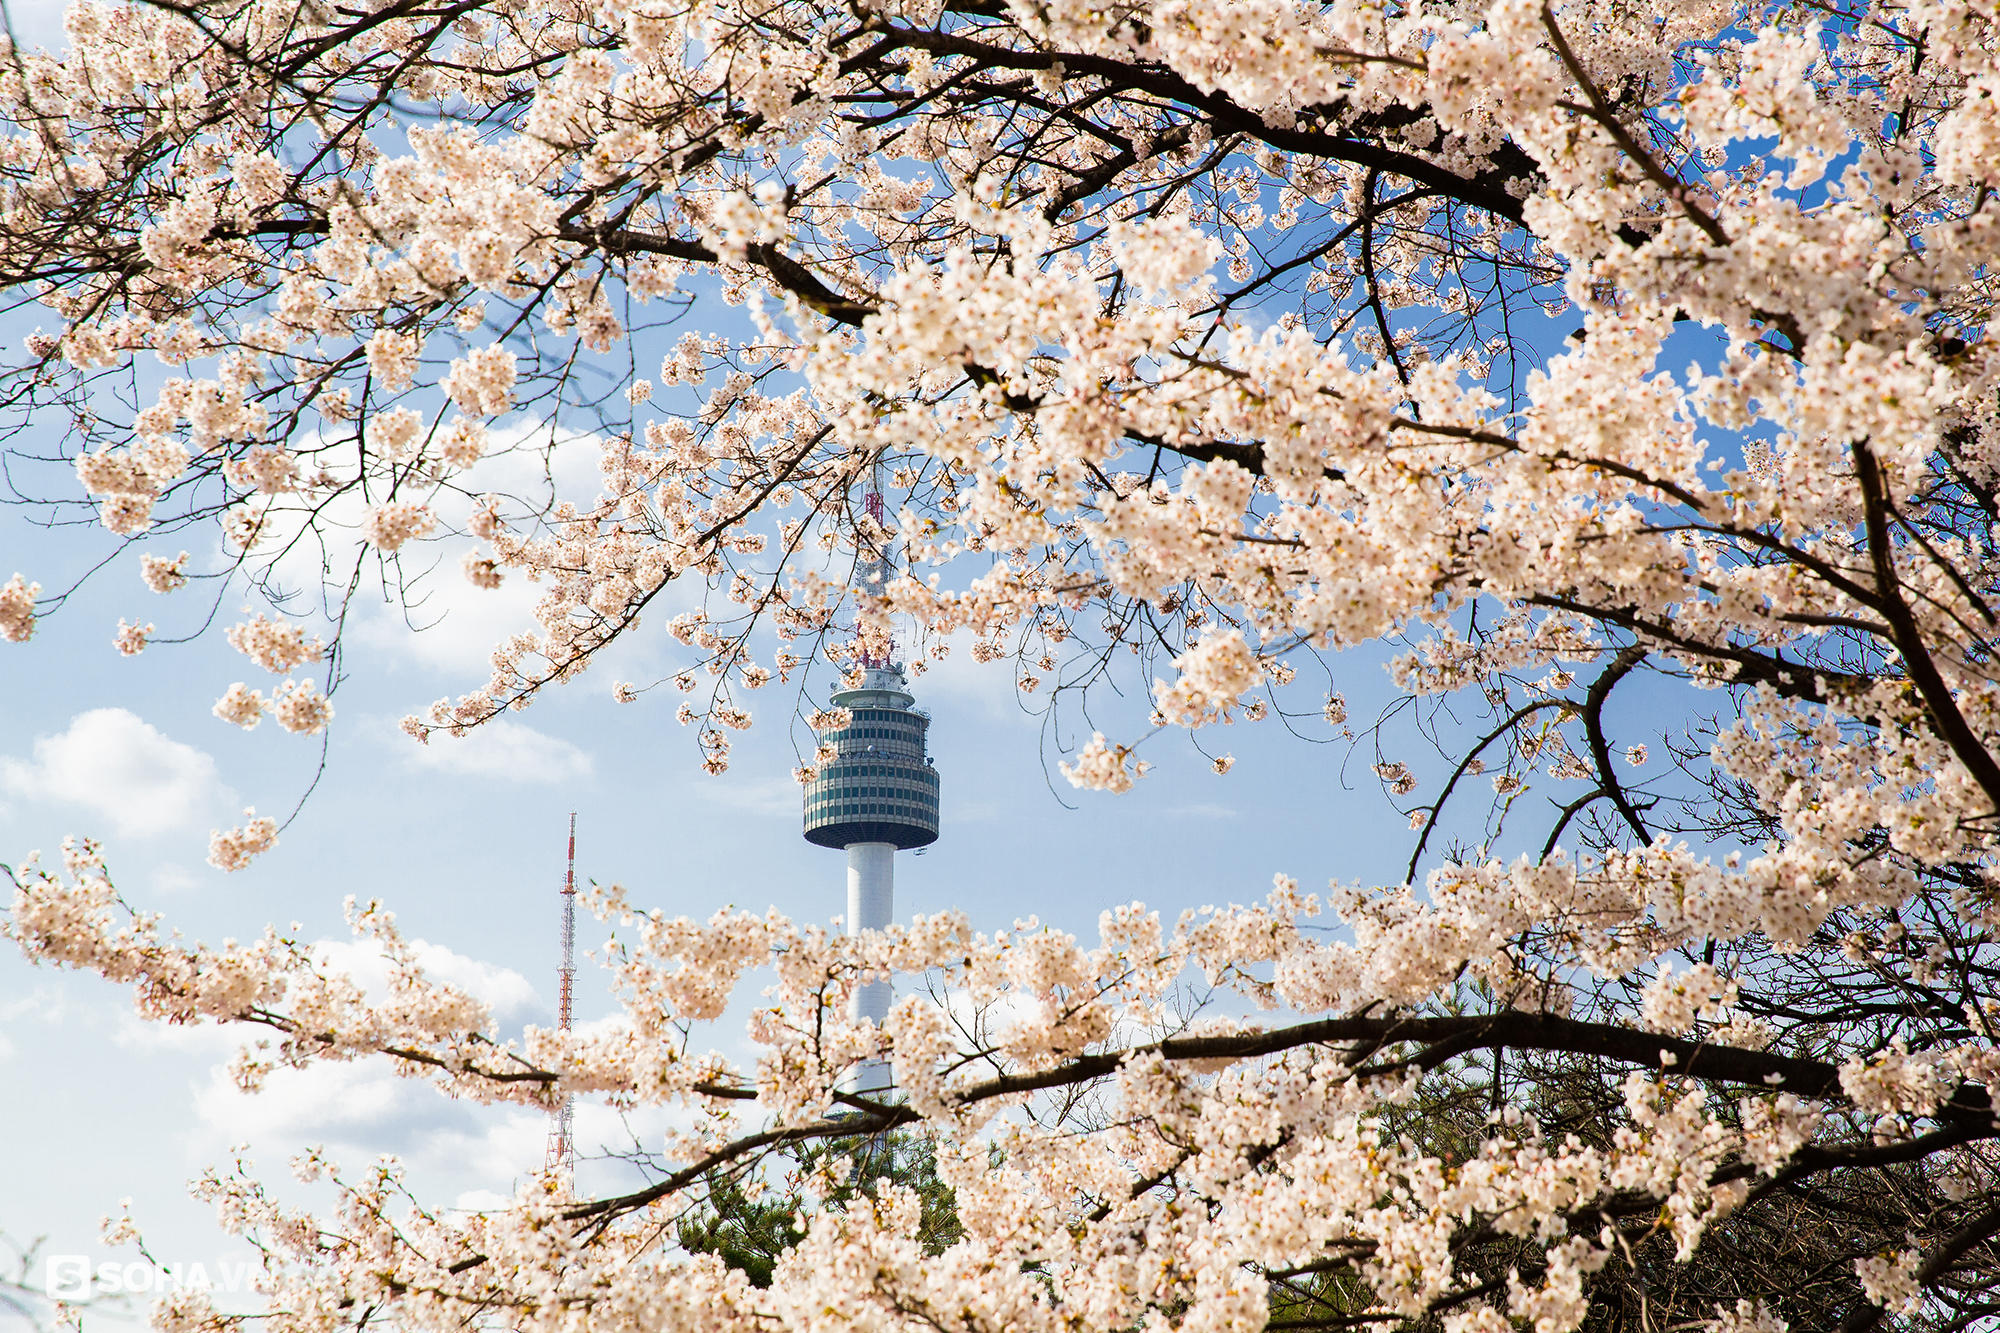 Tháp chọc trời Seoul: Cả nghìn móc khoá anh yêu em; nhìn thấy chữ Hà Nội ở nơi đặc biệt - Ảnh 3.